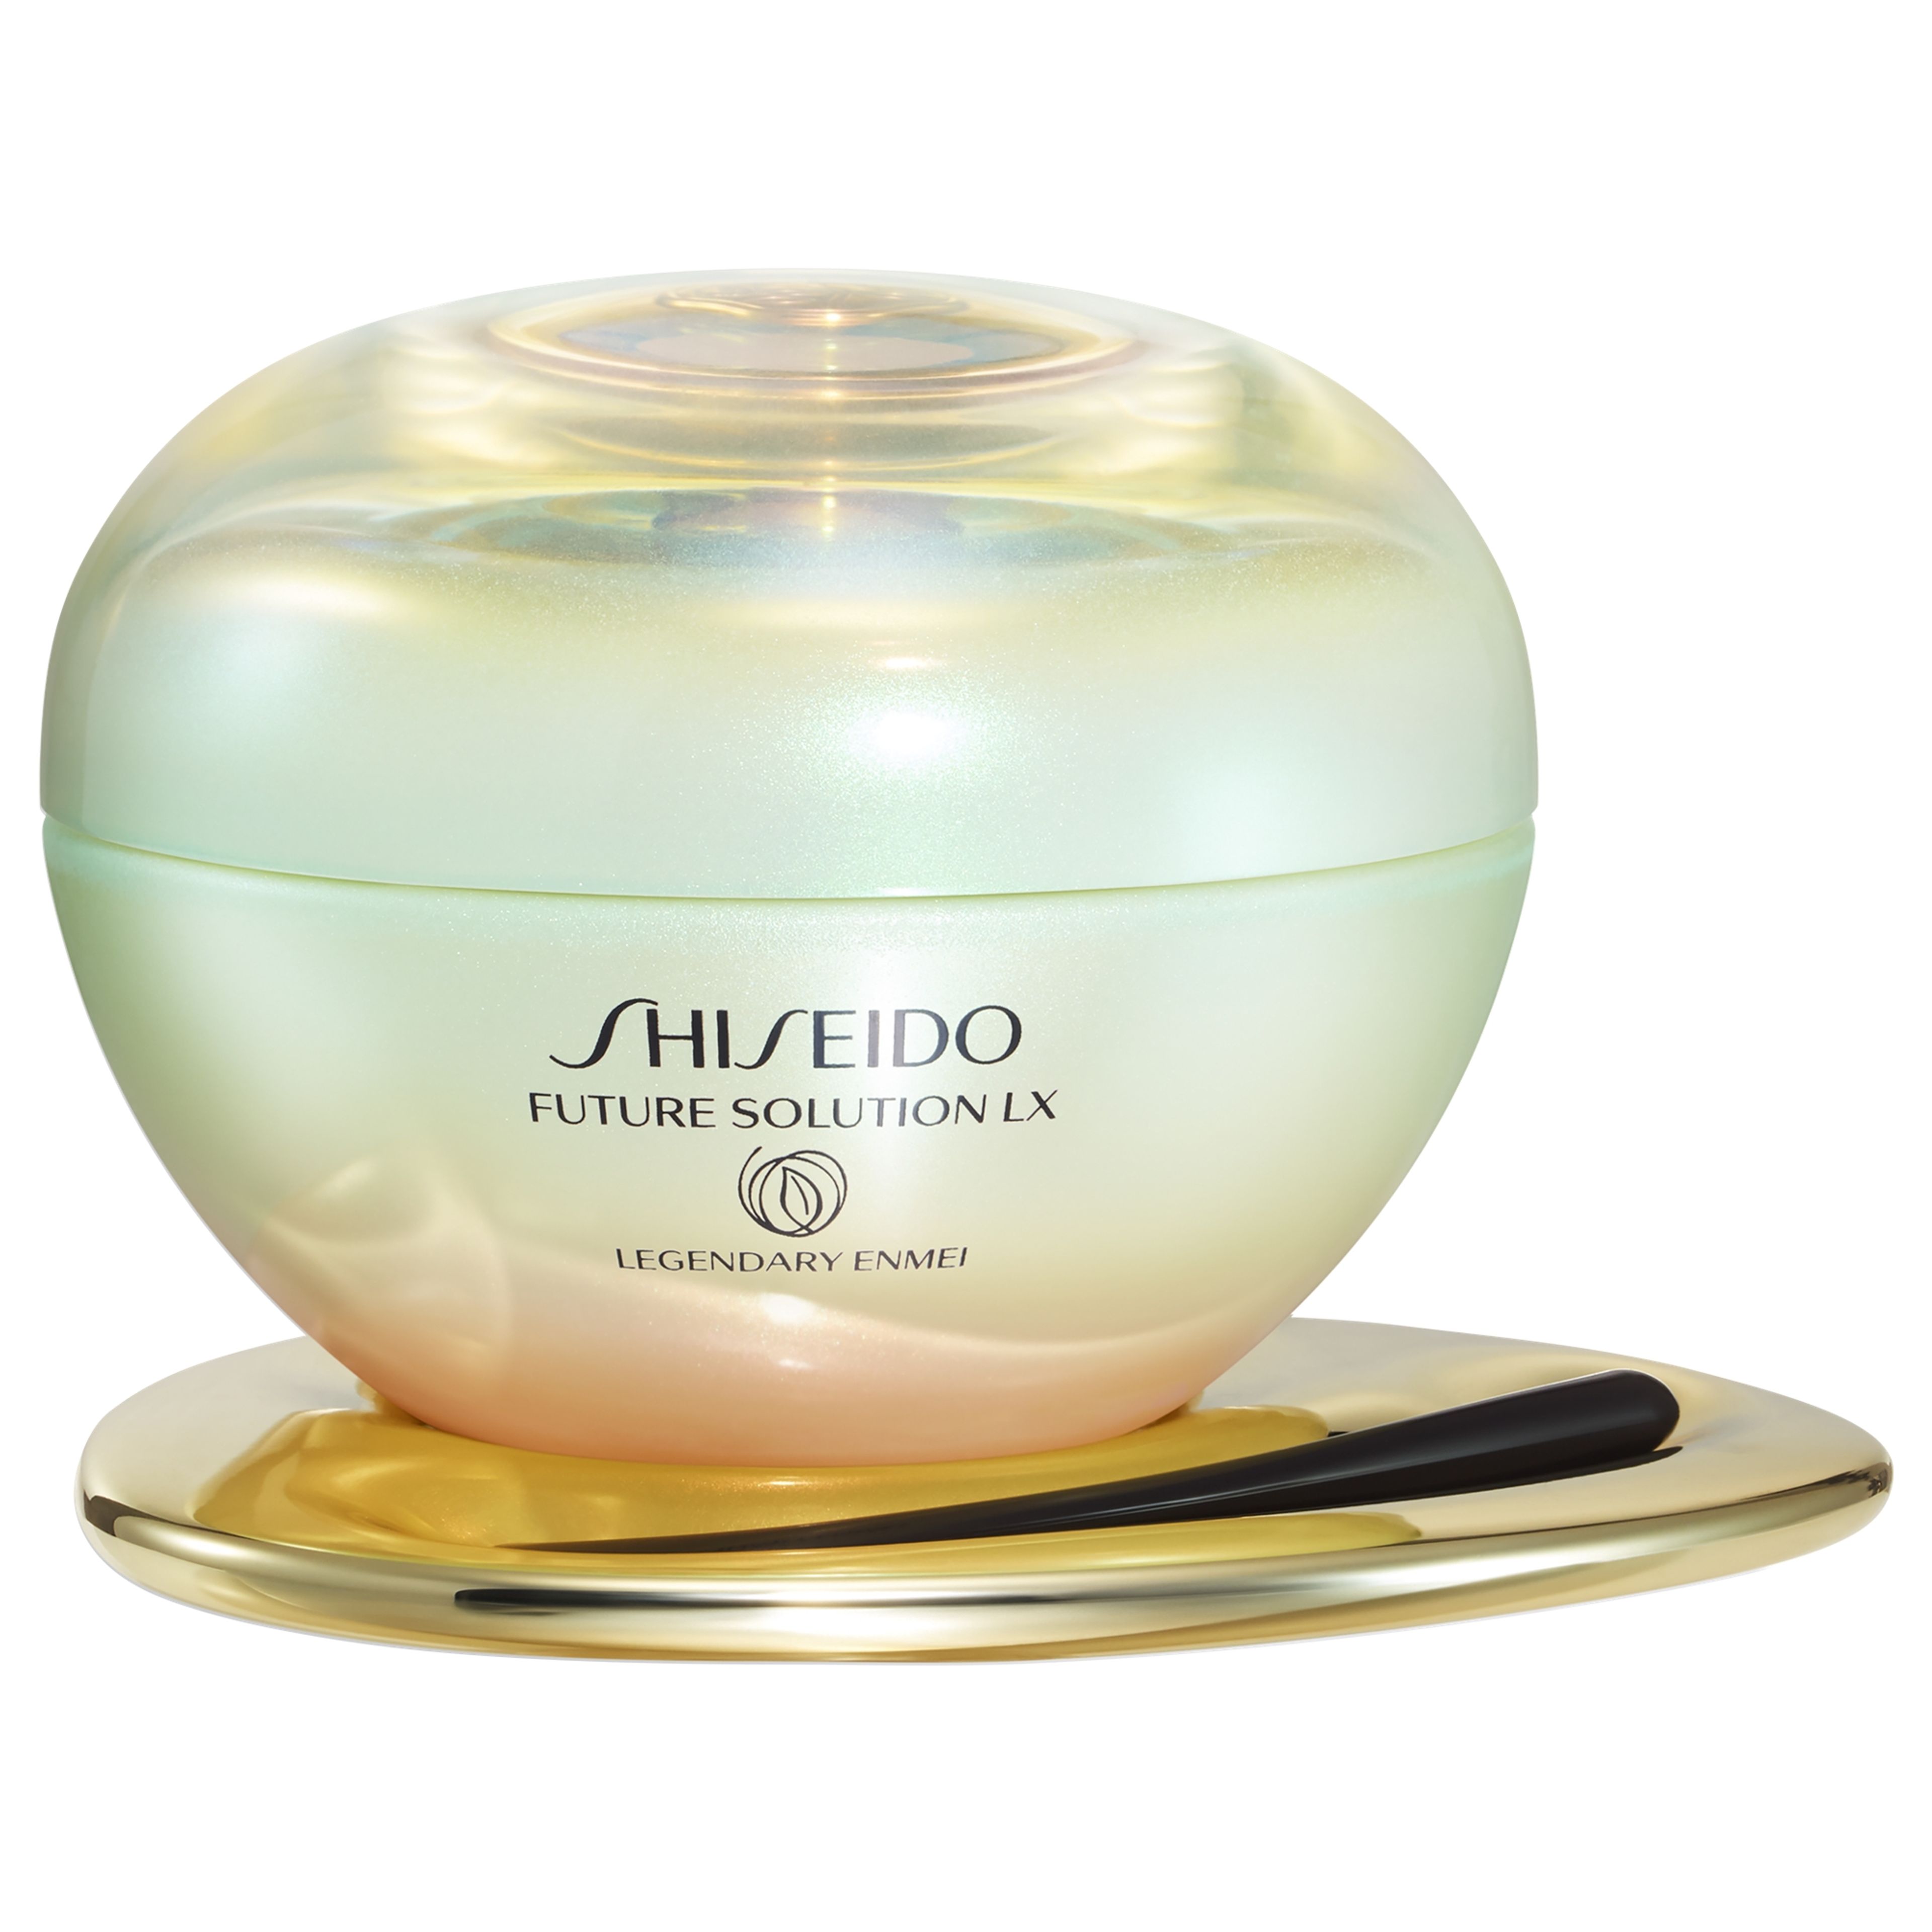 Shiseido Legendary Enmei Ultimate Renewing Cream 1